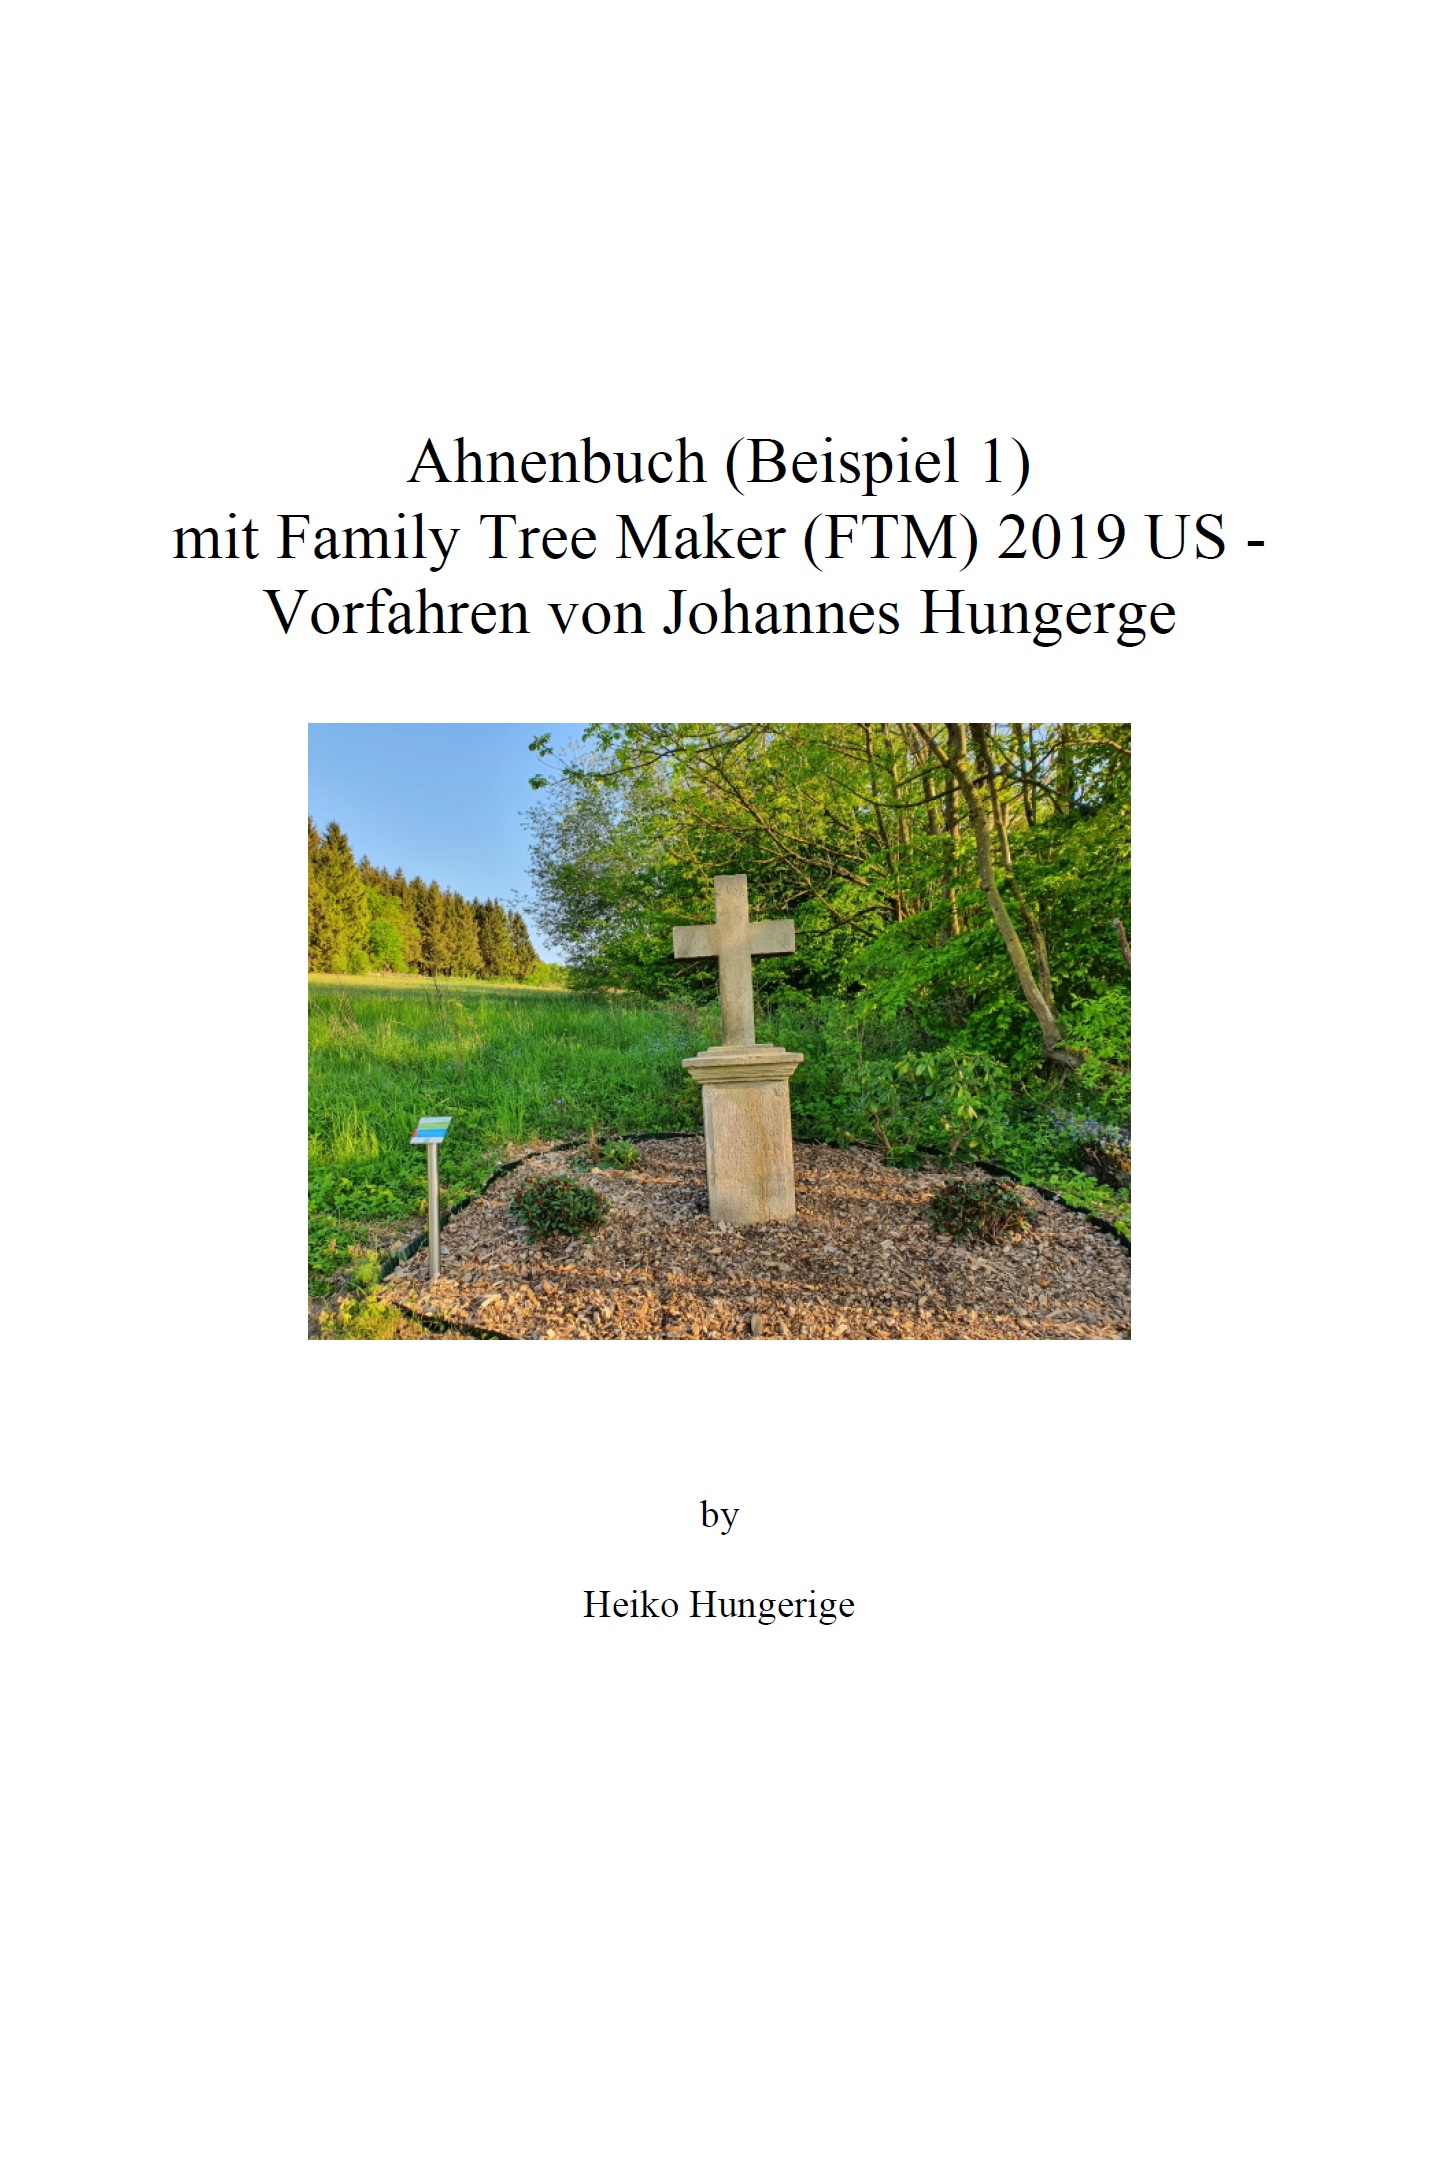 Ahnenbuch (Beispiel 1) mit Family Tree Maker (FTM) 2019 US - Vorfahren von Johannes Hungerge